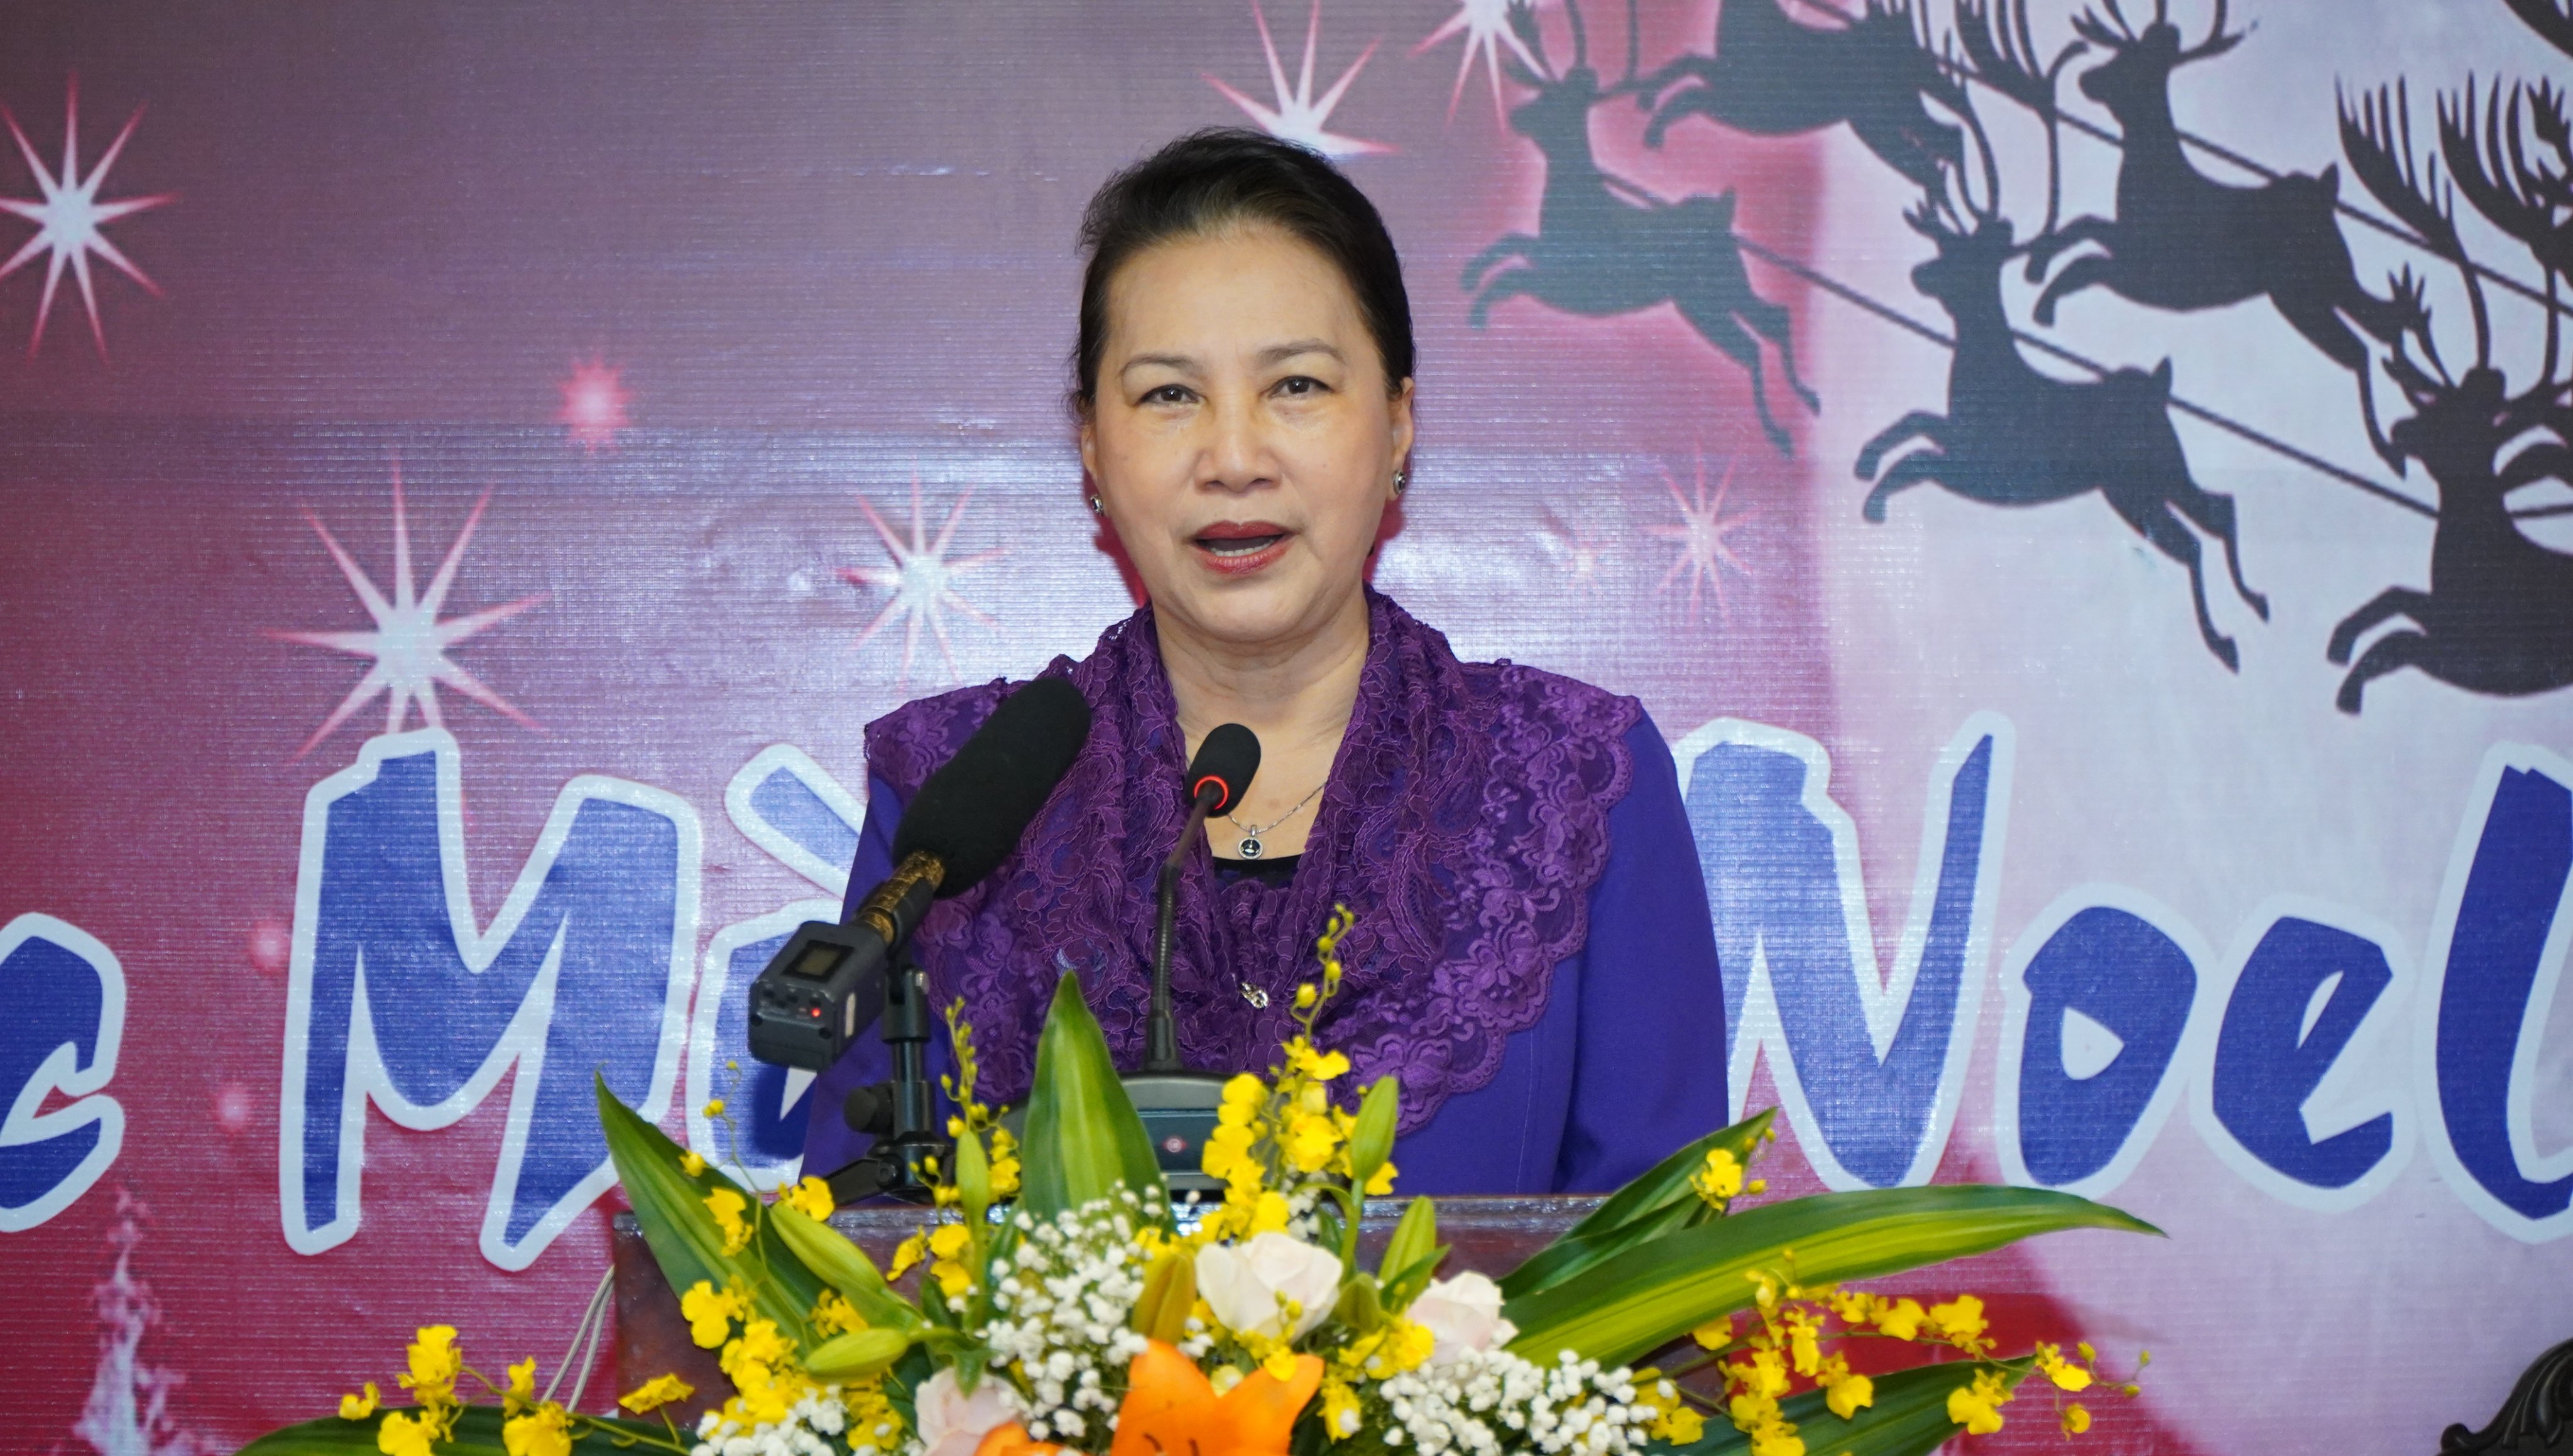 Chào đón ngưởi phụ nữ đầy tài năng và sức mạnh - Chủ tịch Quốc hội Nguyễn Thị Kim Ngân, cùng khám phá các bức ảnh được chụp để ghi lại những khoảnh khắc đáng nhớ trong cuộc đời bà.